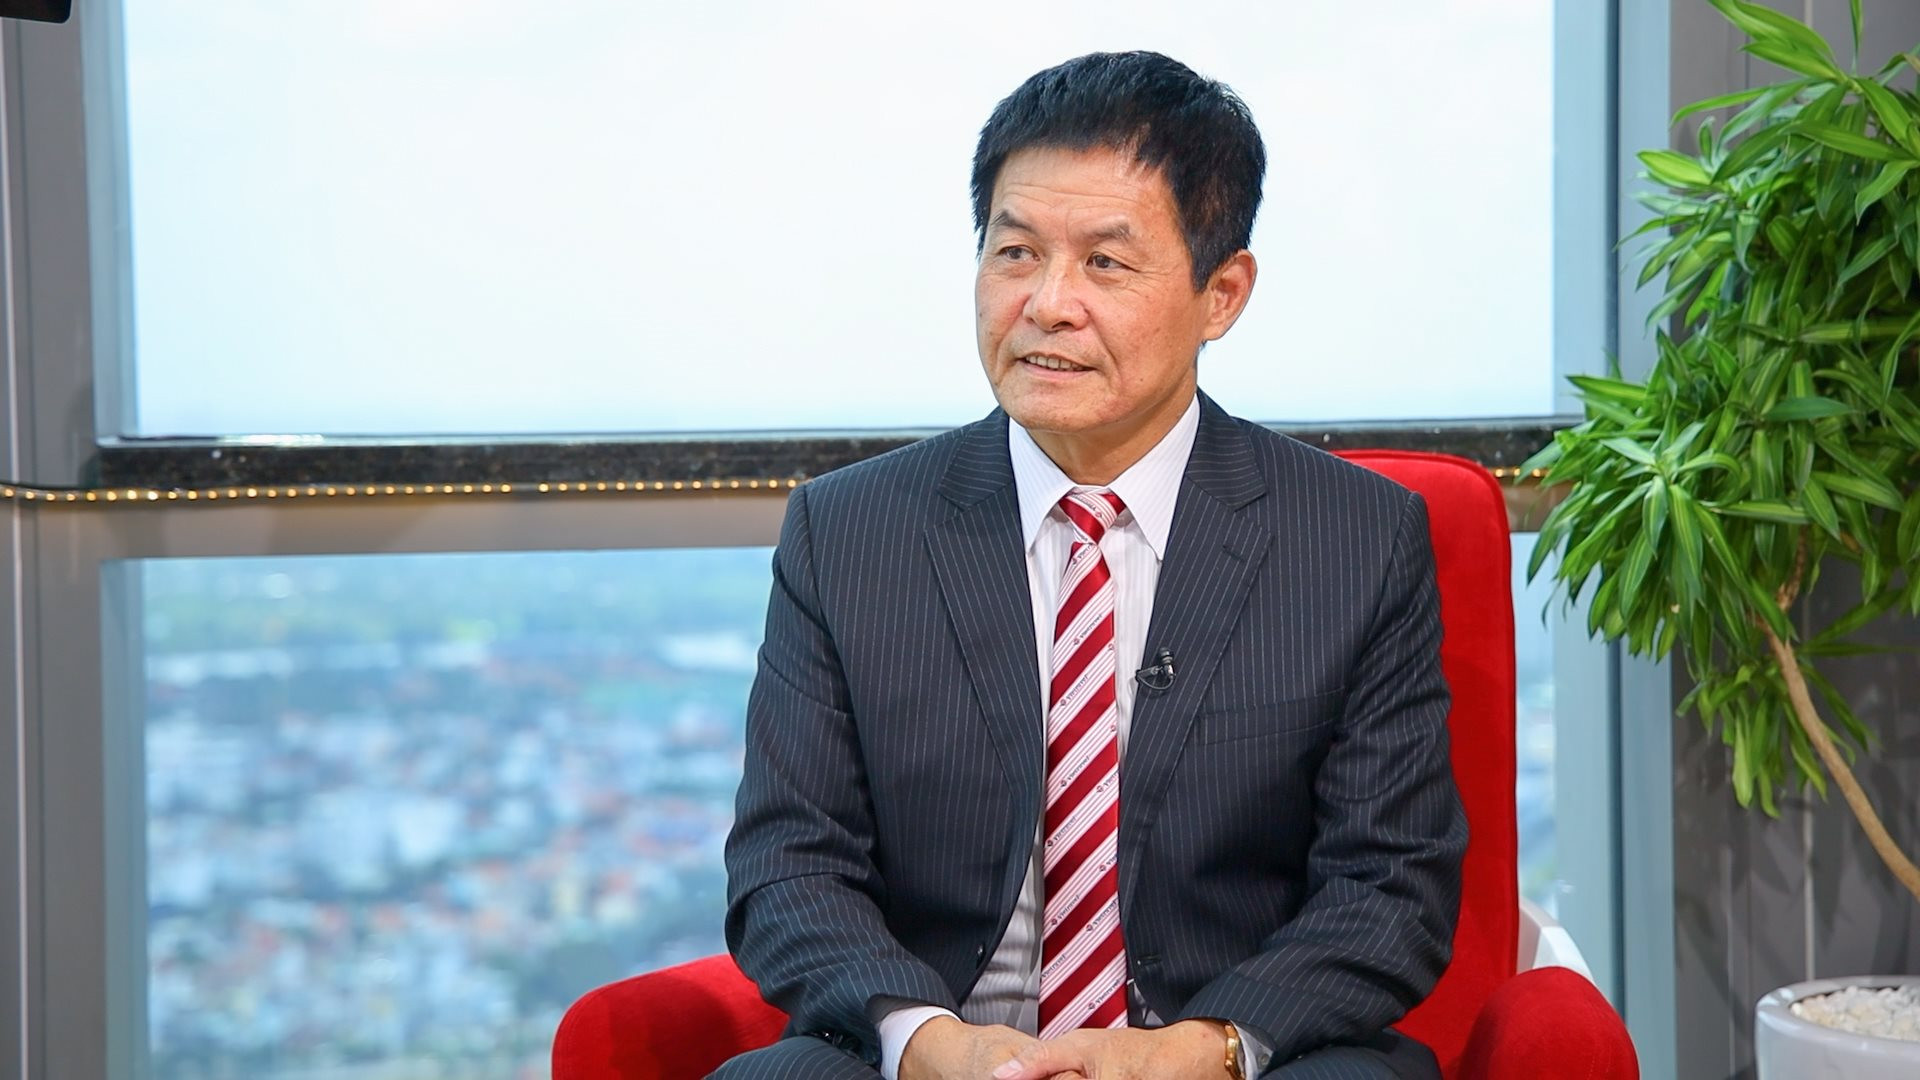 Chủ tịch HĐQT Nguyễn Quốc Kỳ trở thành cổ đông lớn tại Vietravel (VTR) sau đợt chào bán riêng lẻ - Ảnh 1.